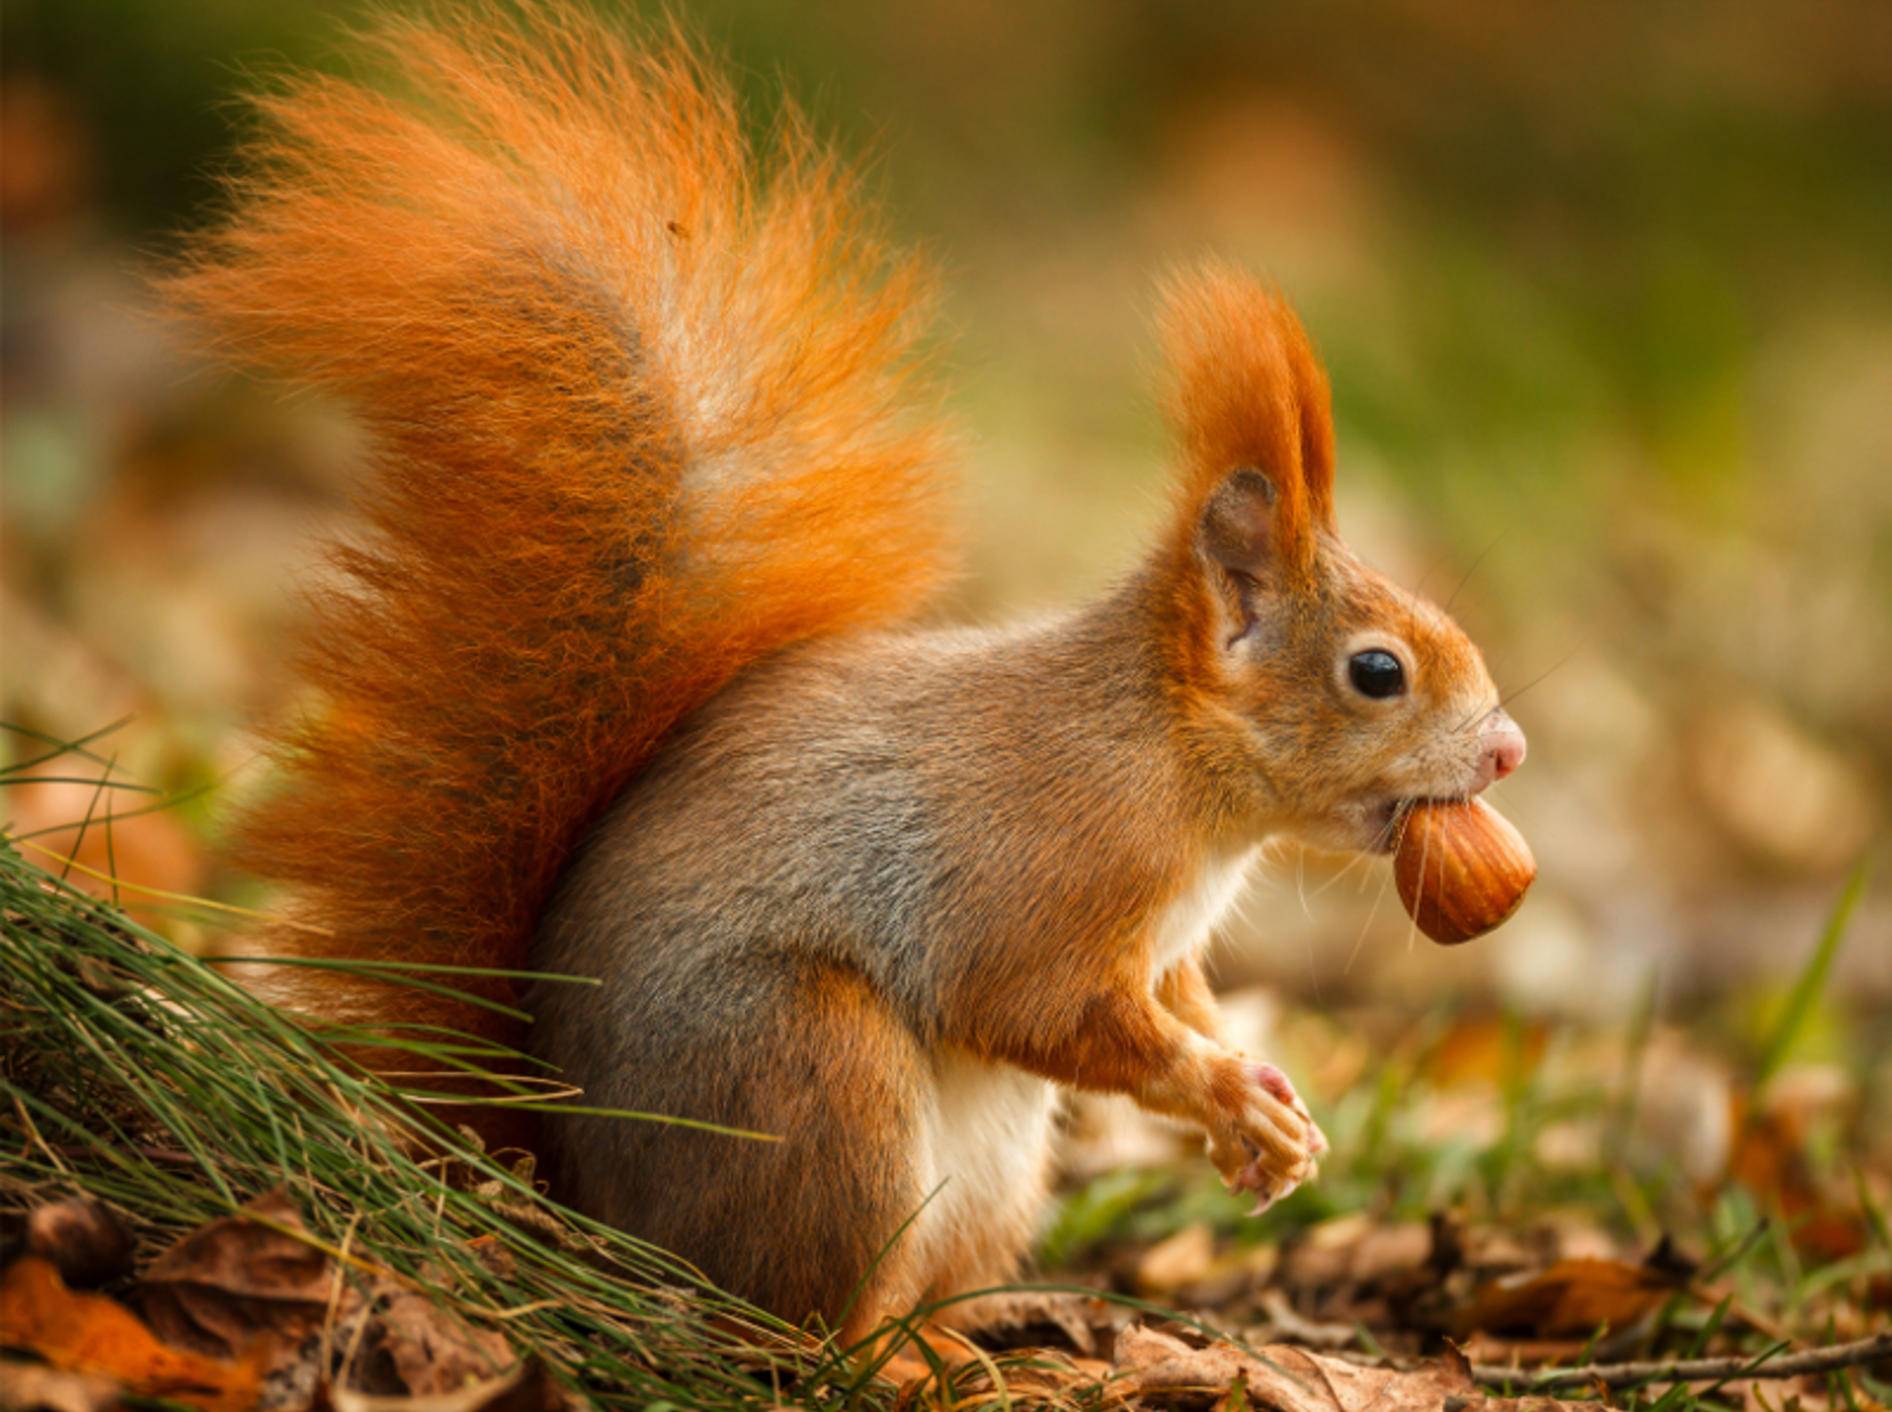 Eichhörnchen hat eine Nuss gefunden: "Leckerrrrr!" – Bild: Shutterstock / Neil Burton